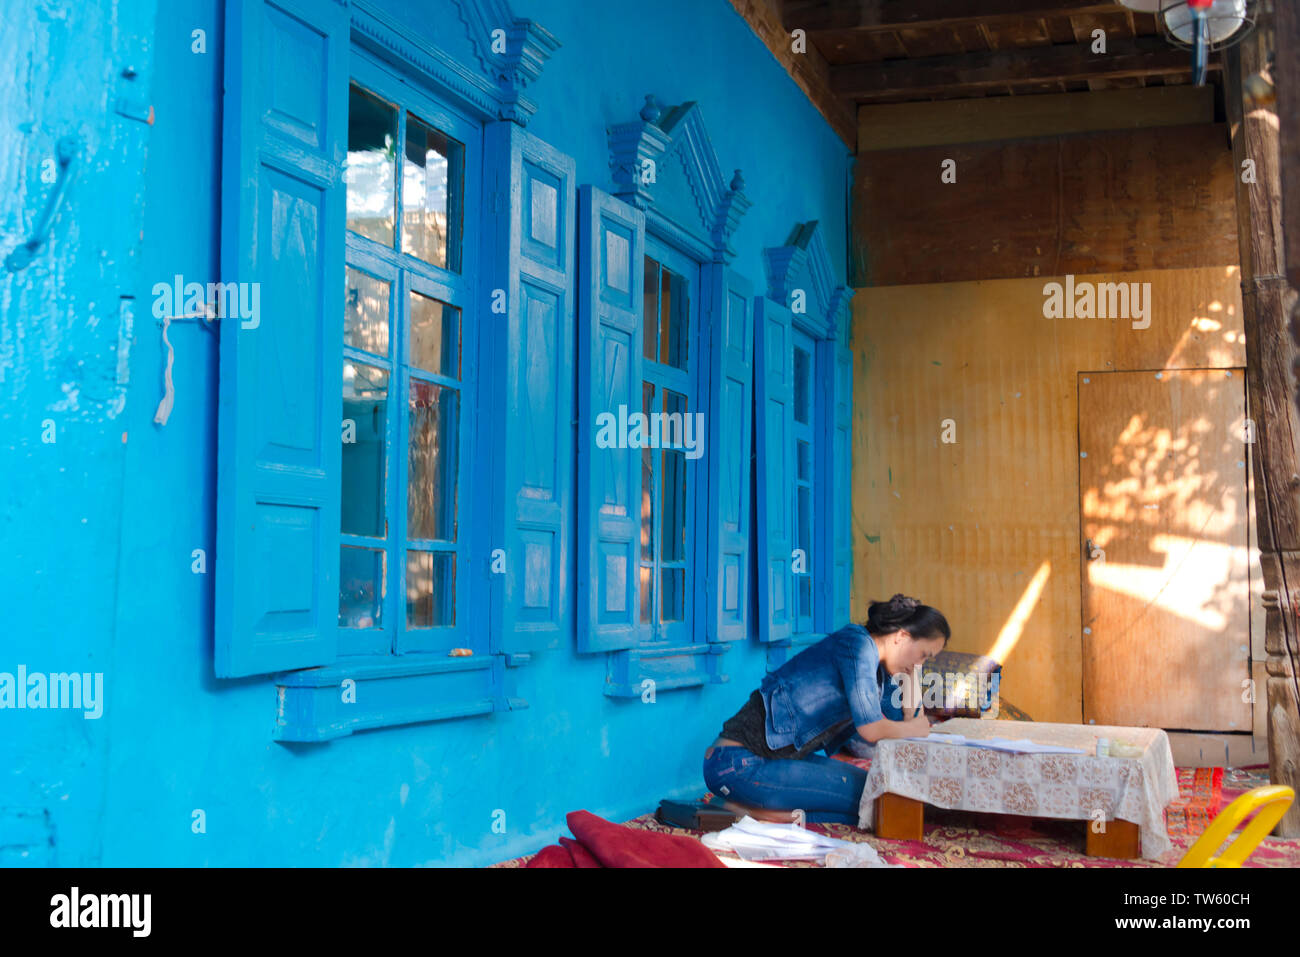 La donna nel vecchio Uighur casa nel vecchio quartiere, Yining (Ghulja), provincia dello Xinjiang, Cina Foto Stock